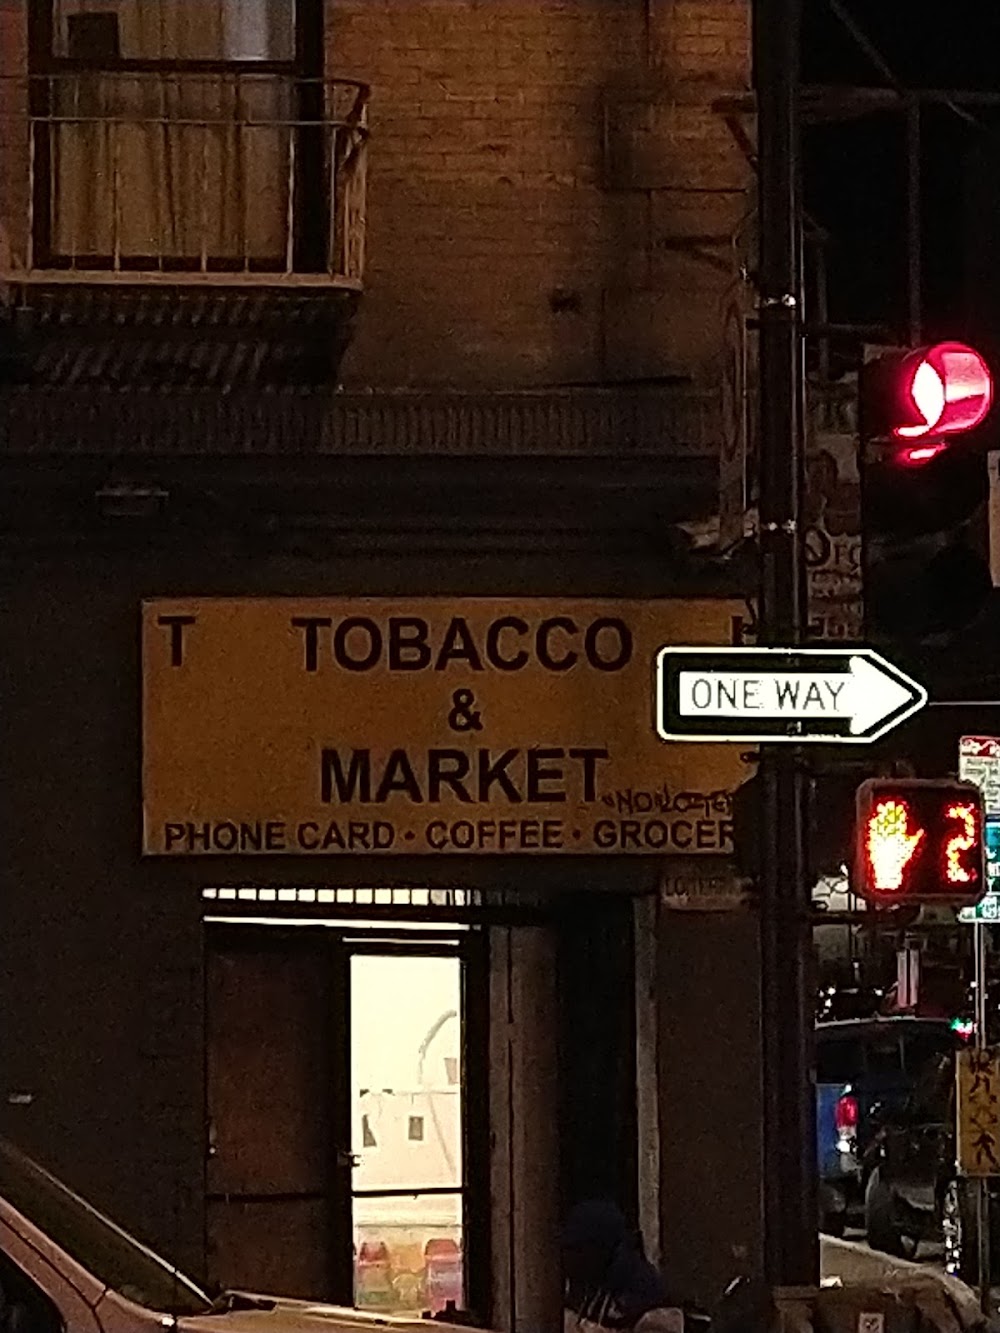 Tl Tobacco & Market